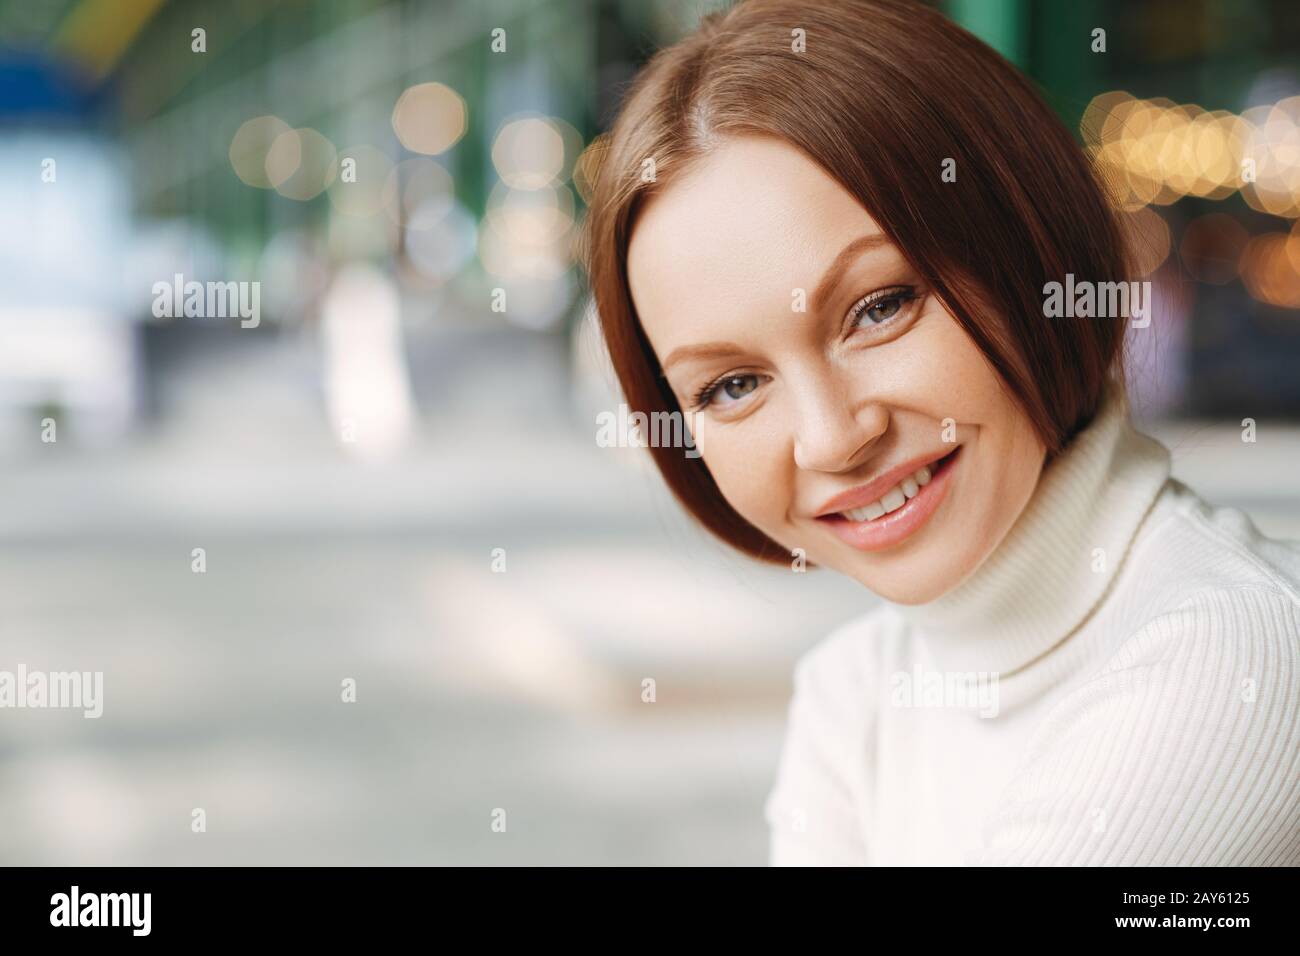 Nahaufnahme einer zufriedenen europäischen Frau mit fröhlichem Ausdruck, gekleidet in lässiger Kleidung, schaut geheimnisvoll auf die Kamera, hat einen Spaziergang im Freien, stellt eine dar Stockfoto